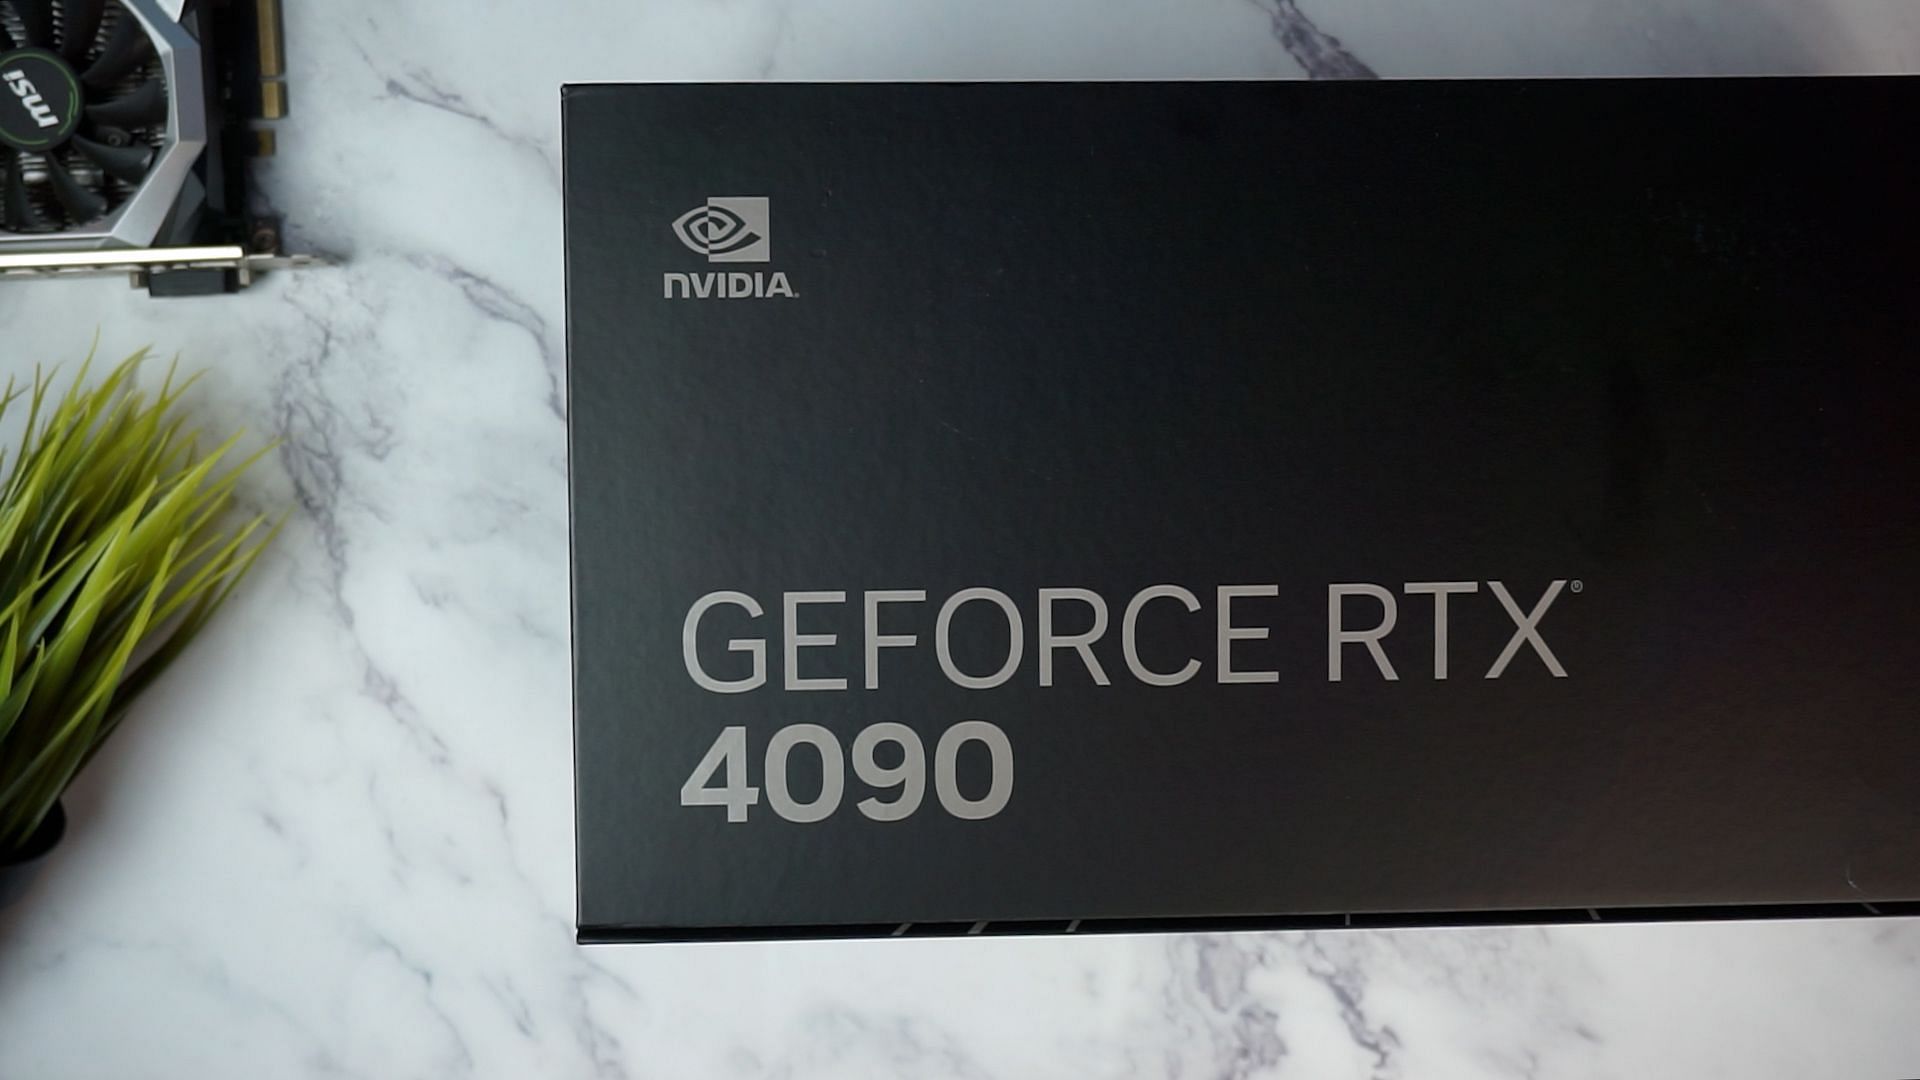 The packaging of the 4090 (Image via Sportskeeda)